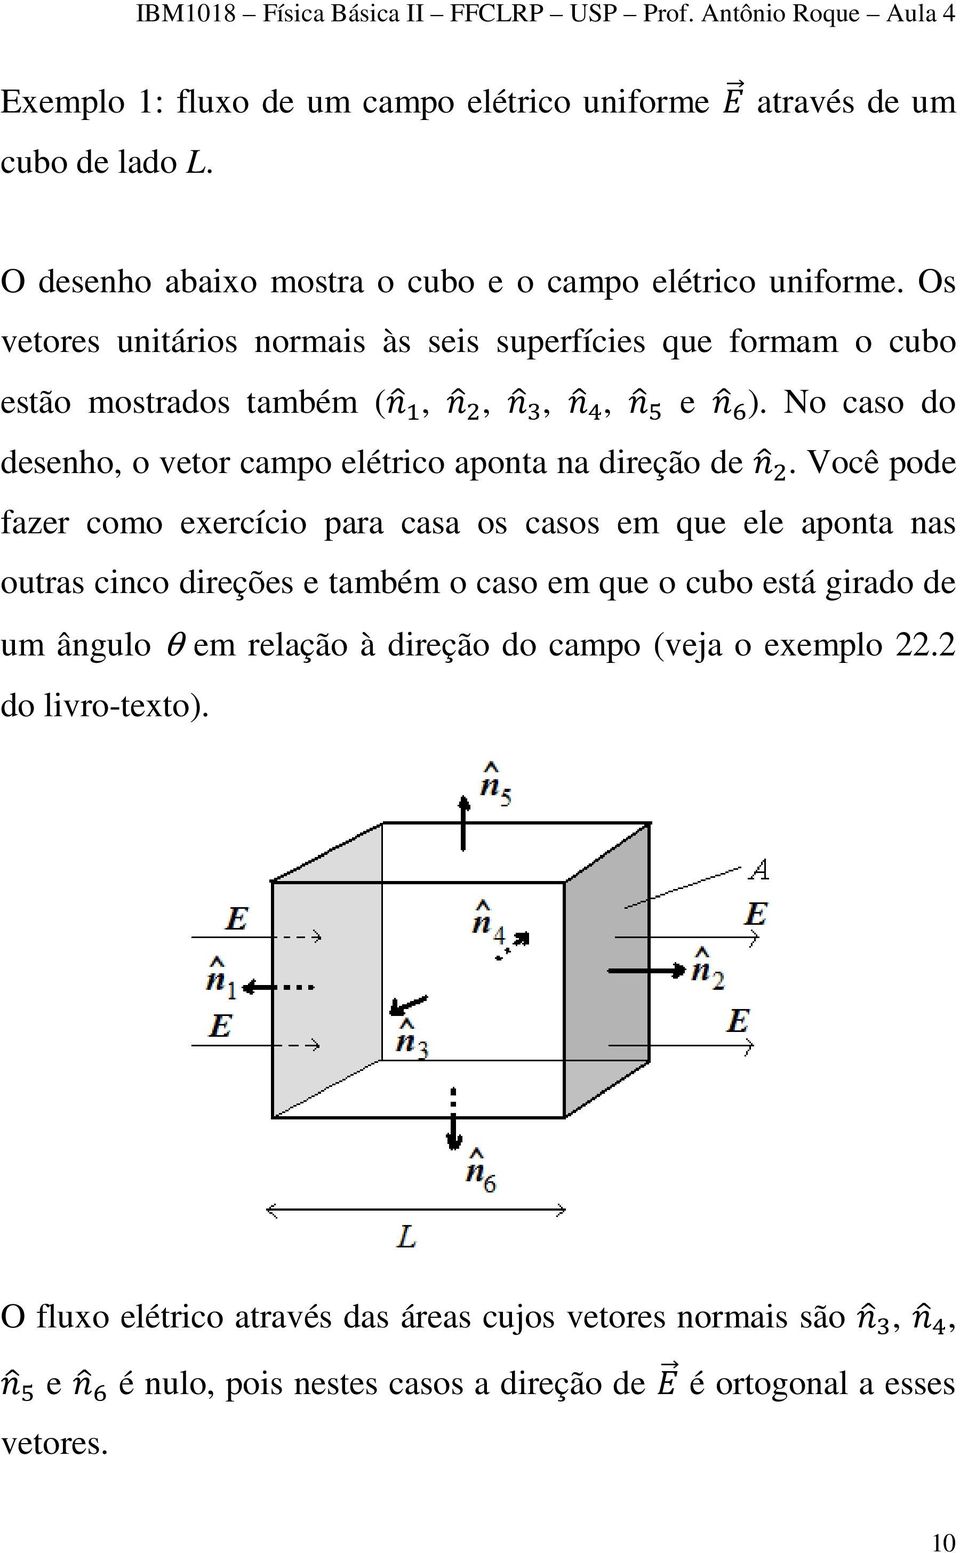 Você pode fazer como exercício para casa os casos em que ele aponta nas outras cinco direções e também o caso em que o cubo está girado de um ângulo θ em relação à